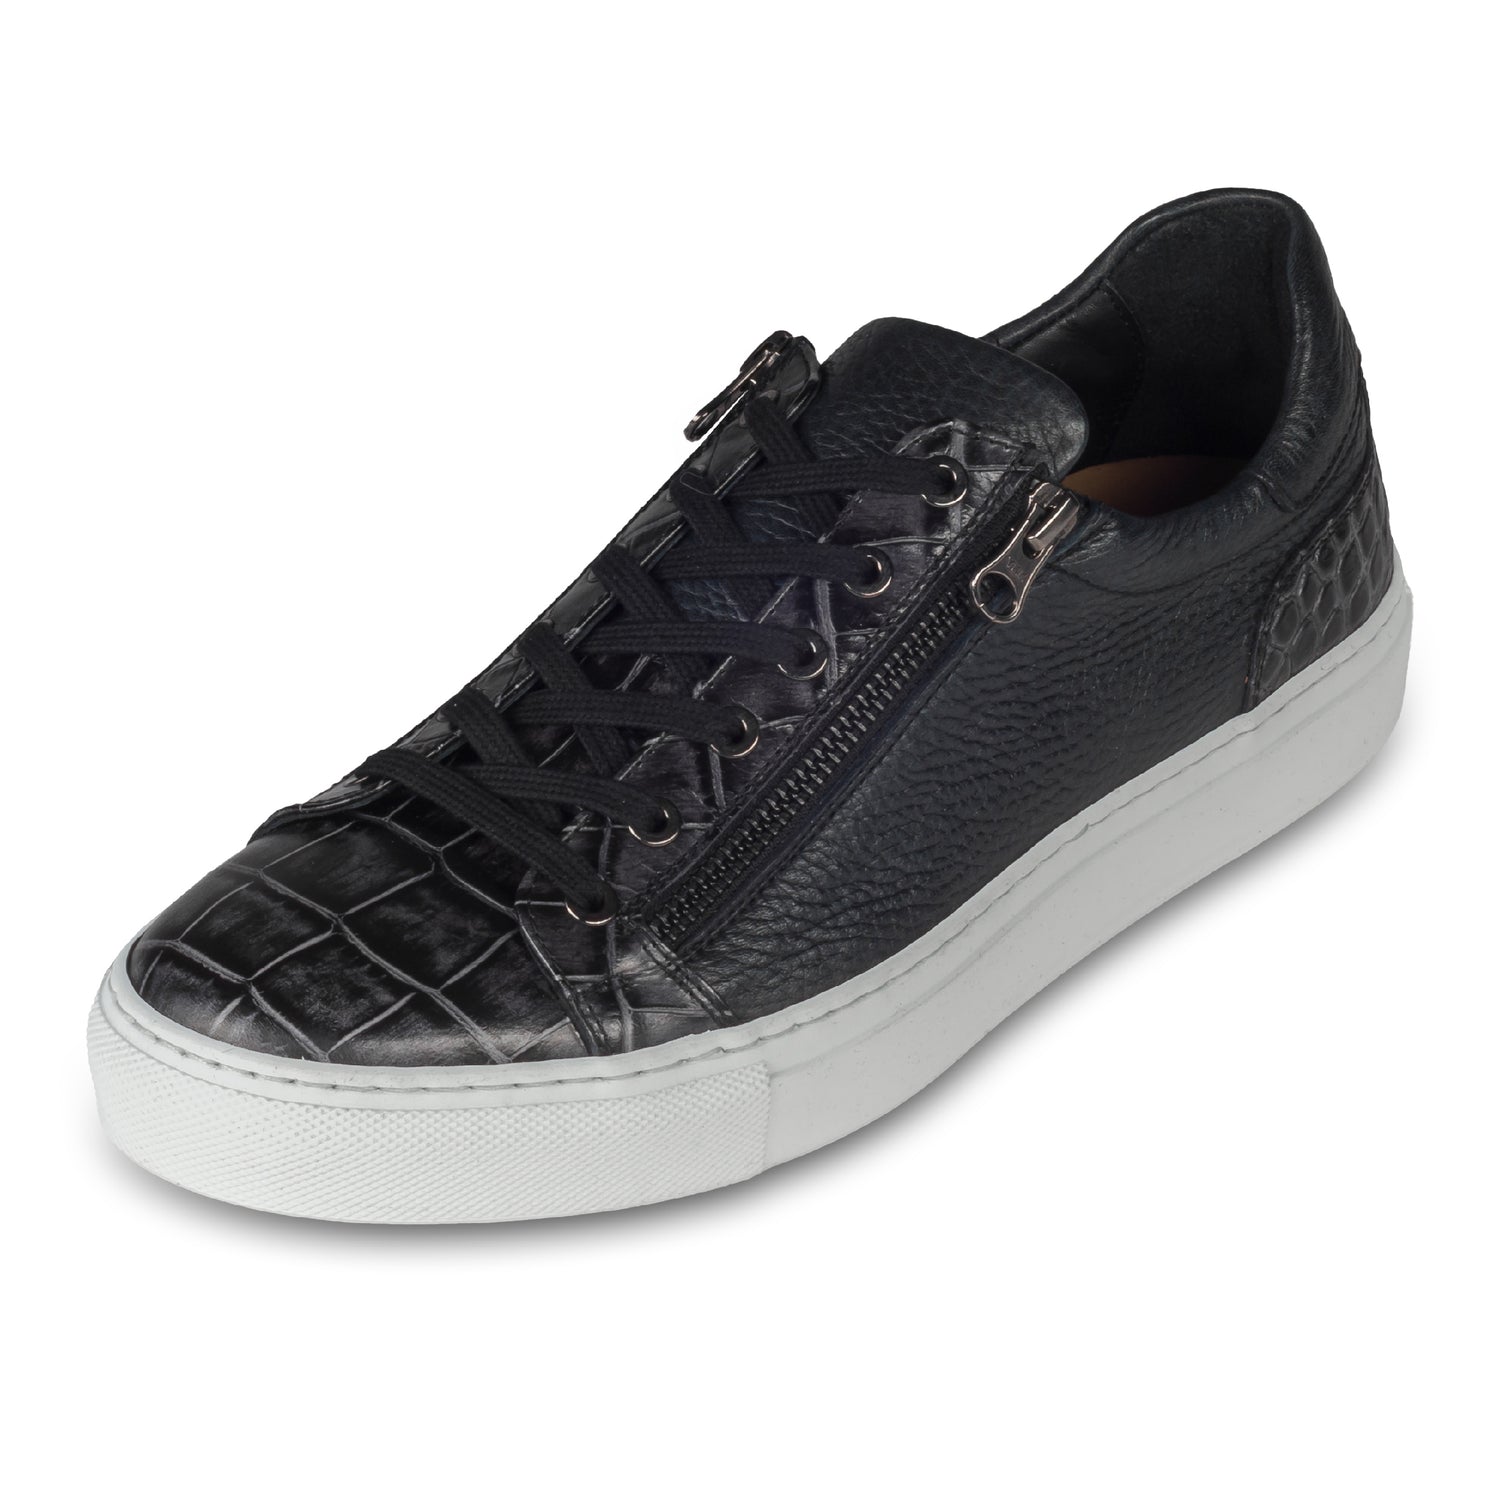 Lorenzi Italienische Herren Kalbsleder Sneaker in schwarz mit Kroko-Optik und weißer Sohle. Handgefertigt. Schräge Ansicht linker Schuh.